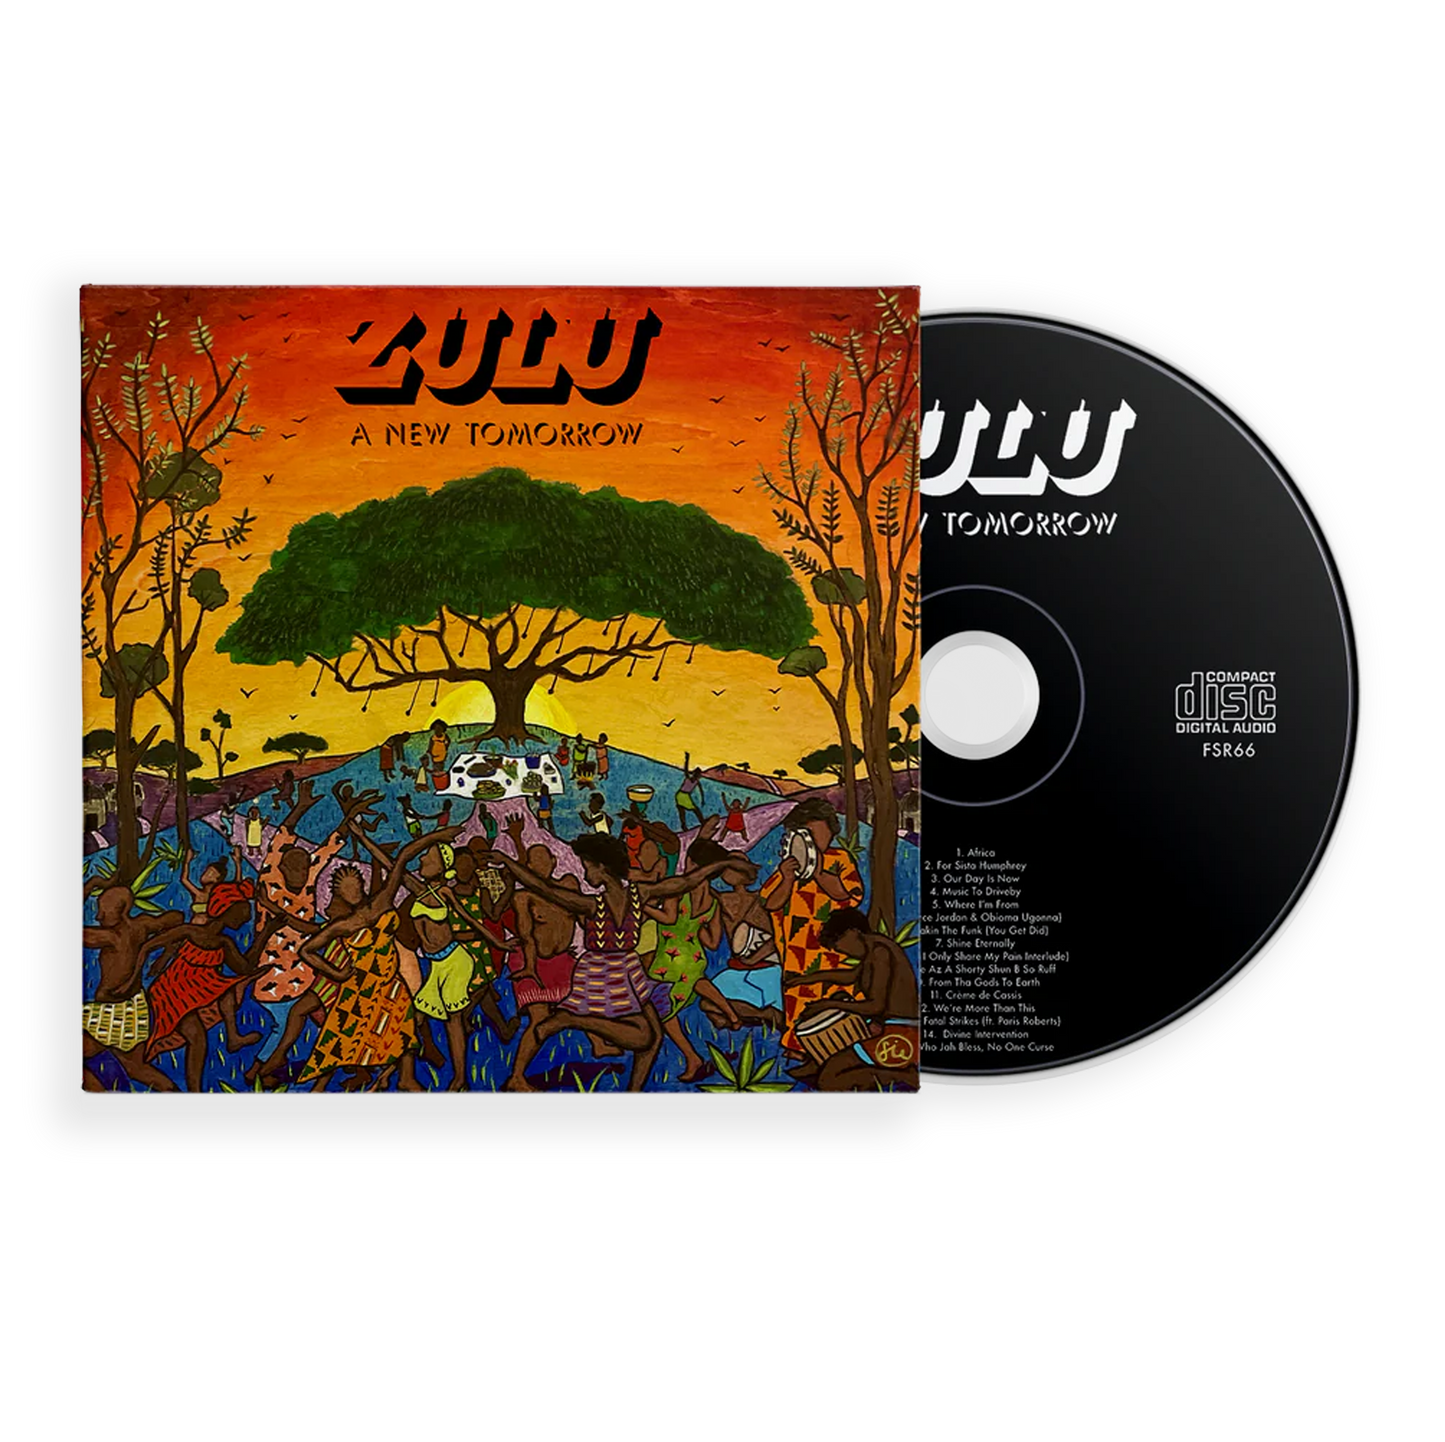 Zulu  "A New Tomorrow" CD